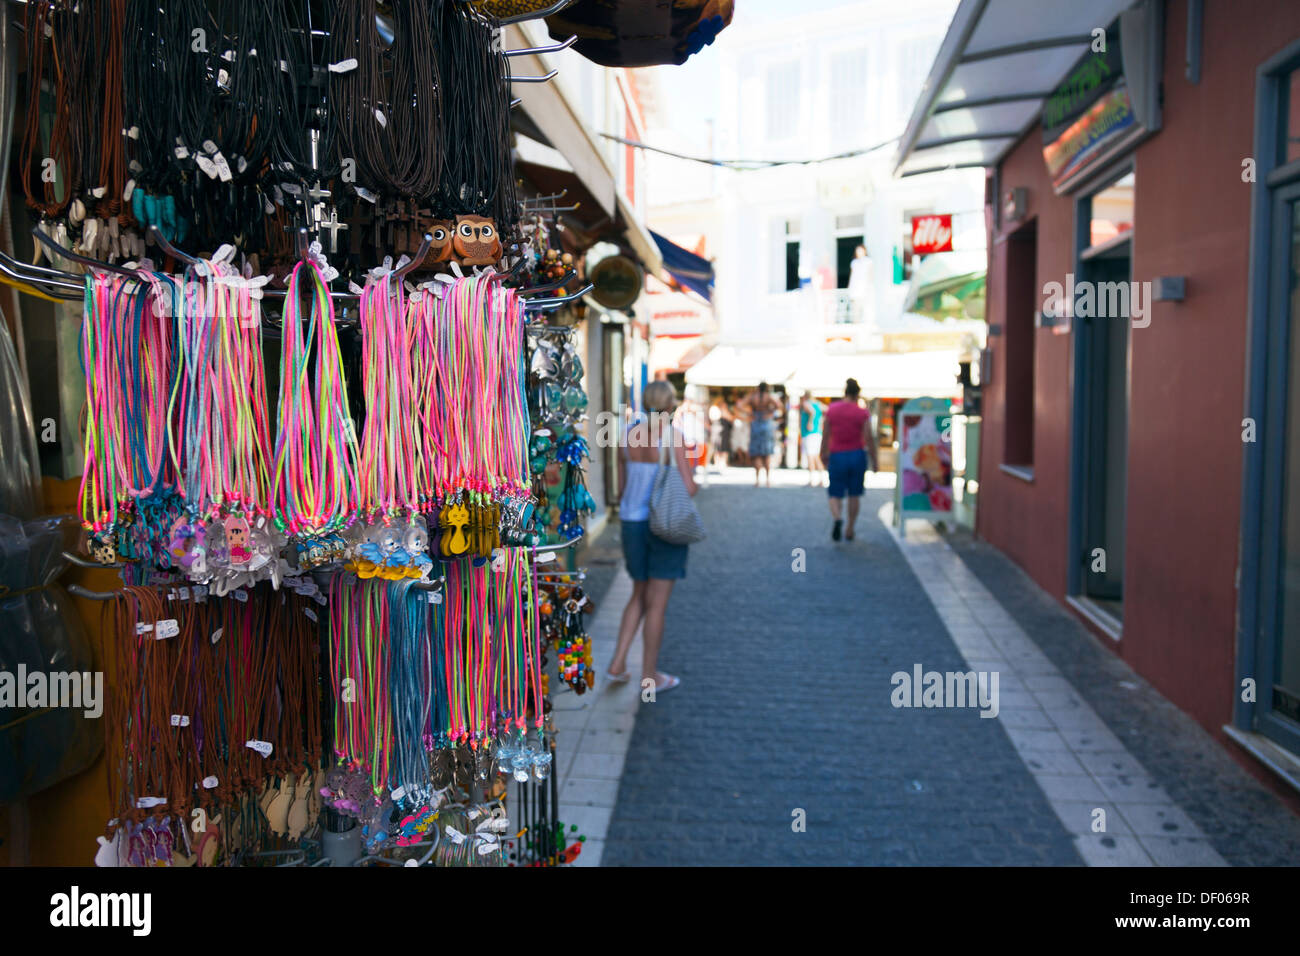 Tat touristique typique de la ville de Parga boutique Grèce grec rues étroites avec des magasins de chaque côté Banque D'Images